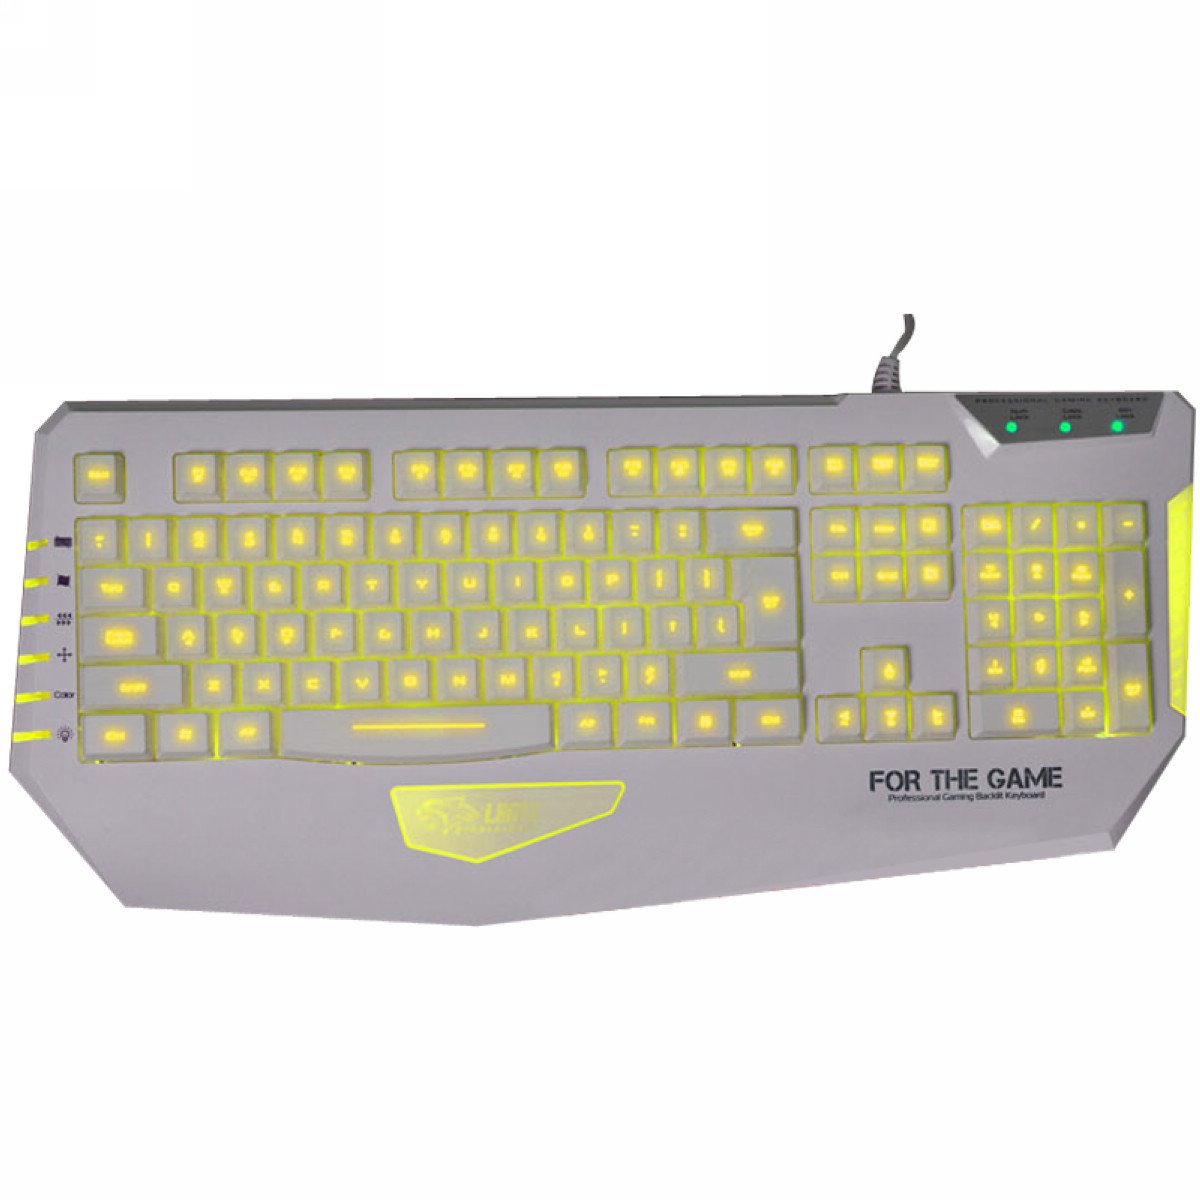 QisanA Judges 3 Colors LED Illuminated Ergonomic Multimedia Backlight USB Wired Gaming Keyboard - White (USA Layout - QWERTY)